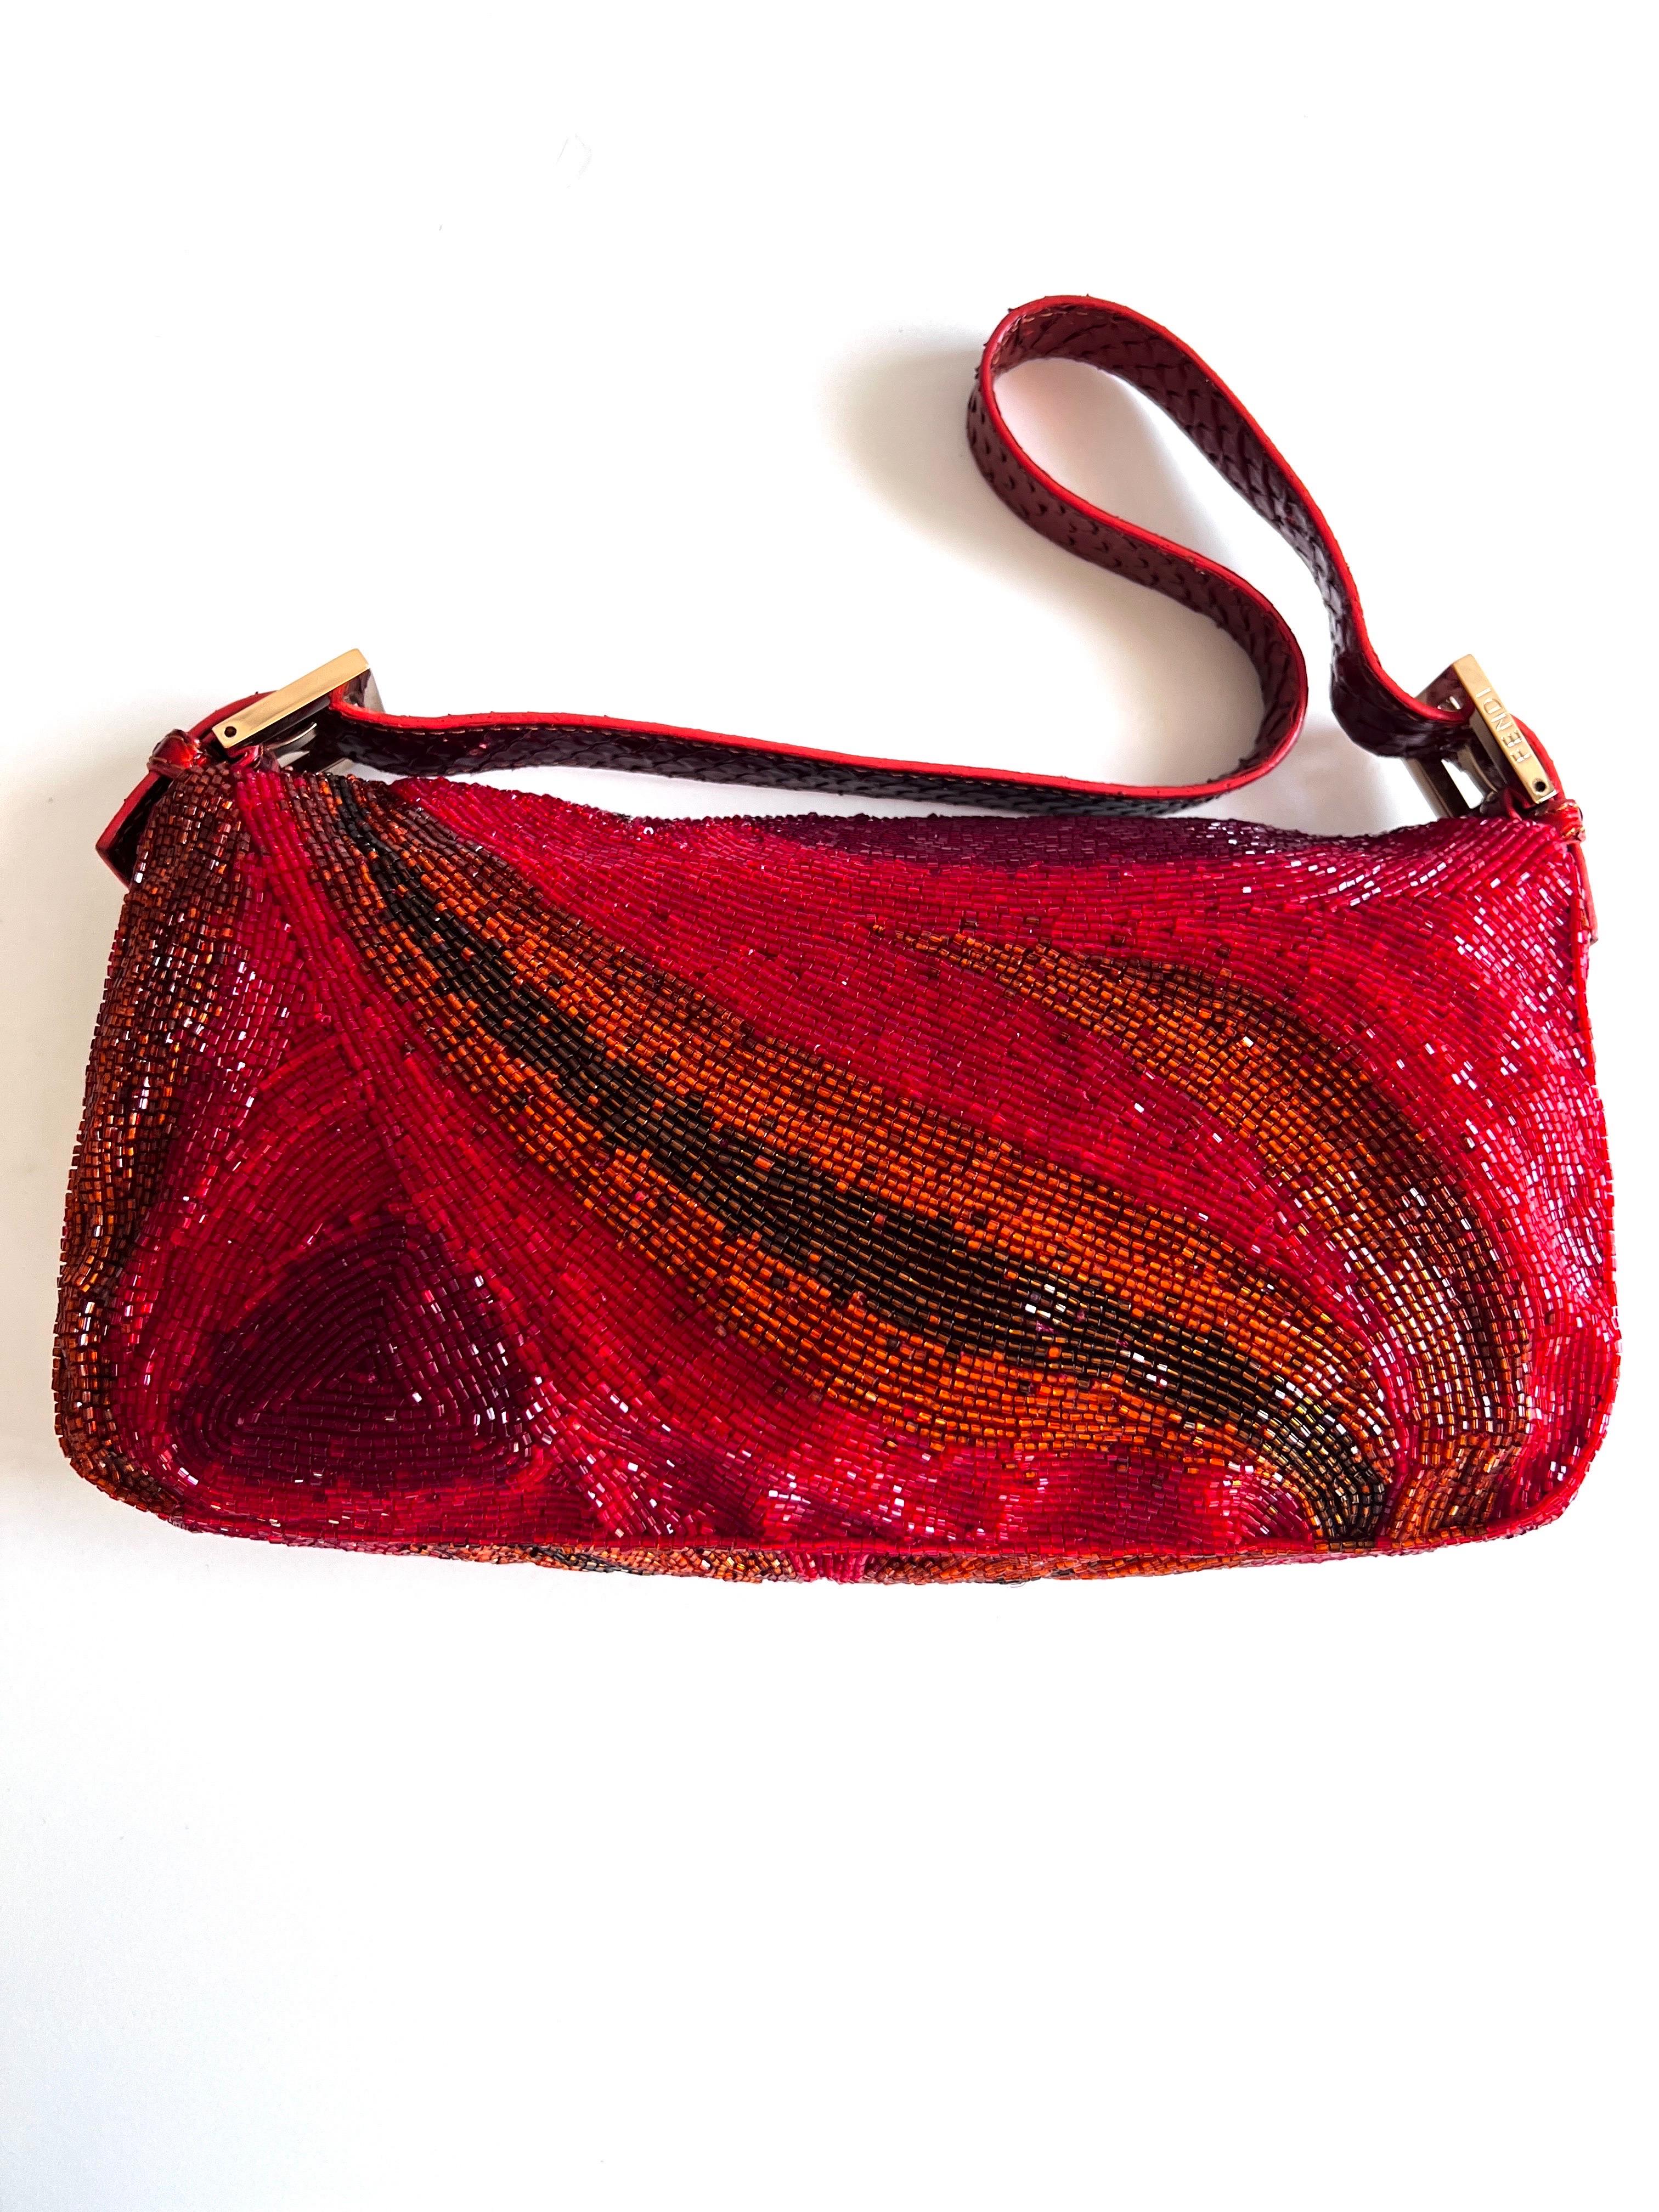 Ein seltenes Juwel in der Welt der Mode: die rote Perlen-Baguette von Fendi. Diese exquisite Handtasche, die mit Präzision und Leidenschaft gefertigt wurde, strahlt Eleganz und Raffinesse aus.

Die Baguette-Form ist mit verschlungenen roten Perlen